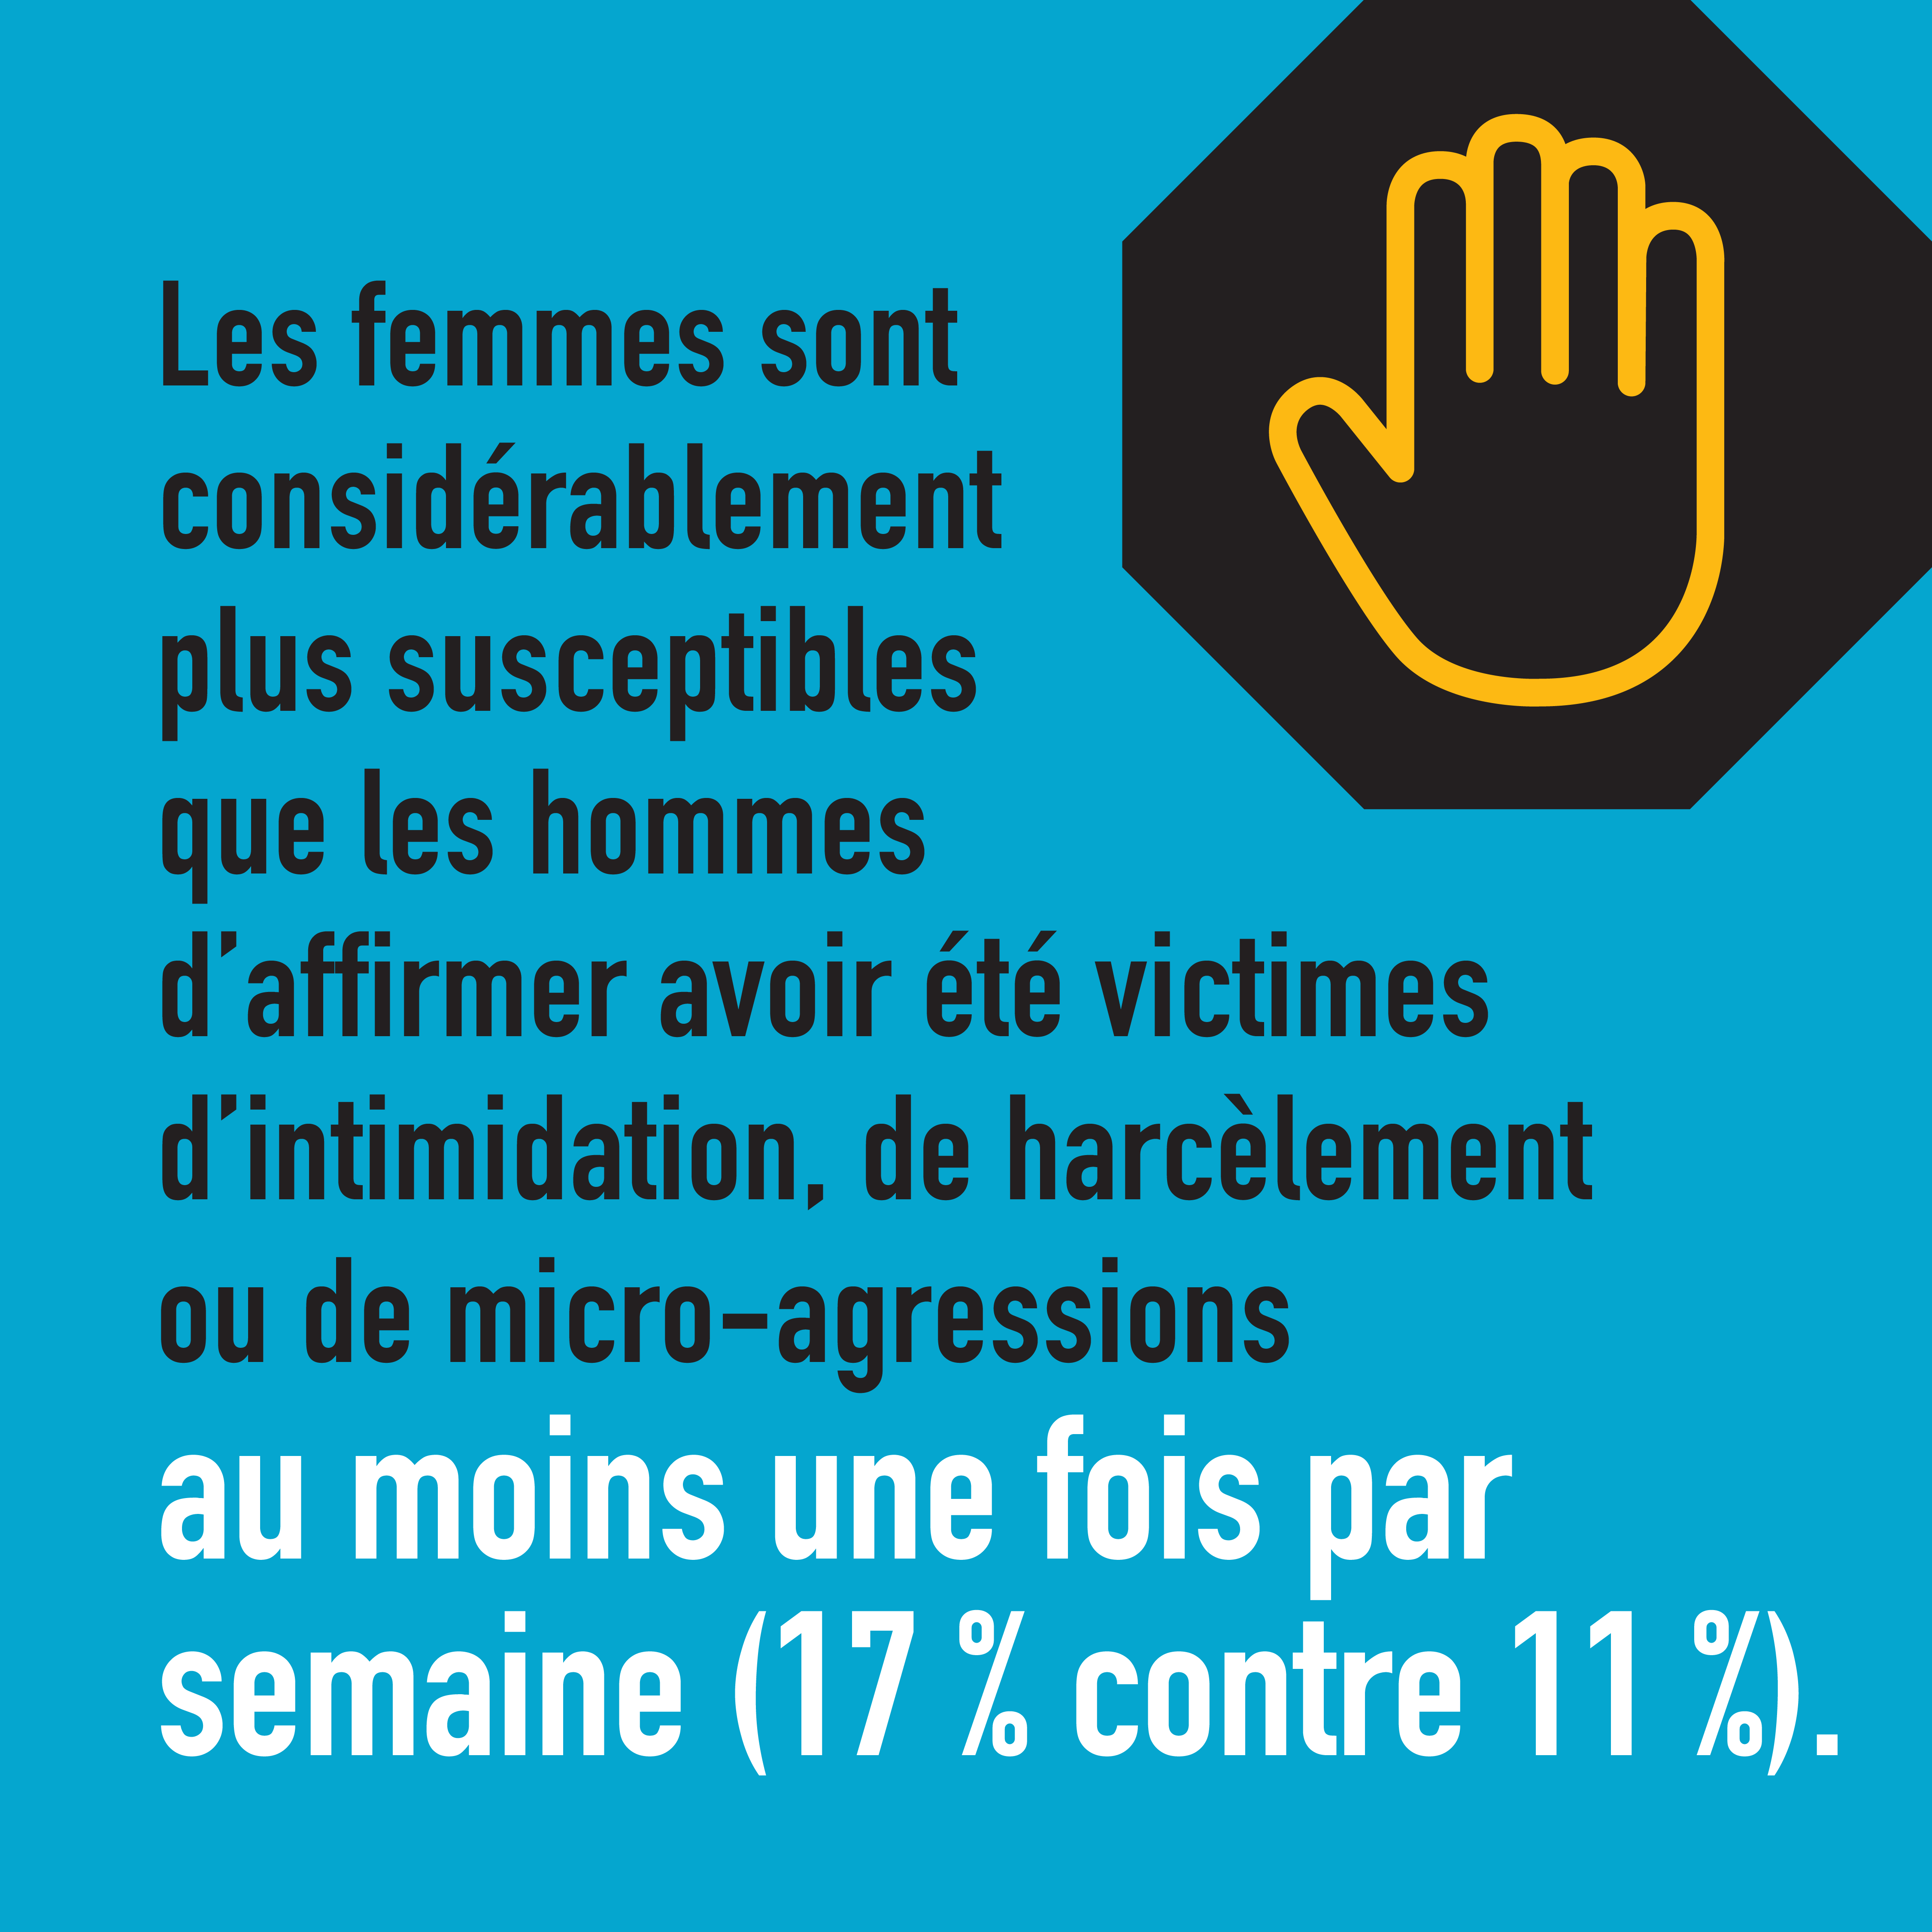 Les femmes sont considérablement plus susceptibles que les hommes d'affirmer avoir été victimes d'intimidation, de harcèlement ou de micro-agressions au moins une fois par semaine (17 % contre 11 %).